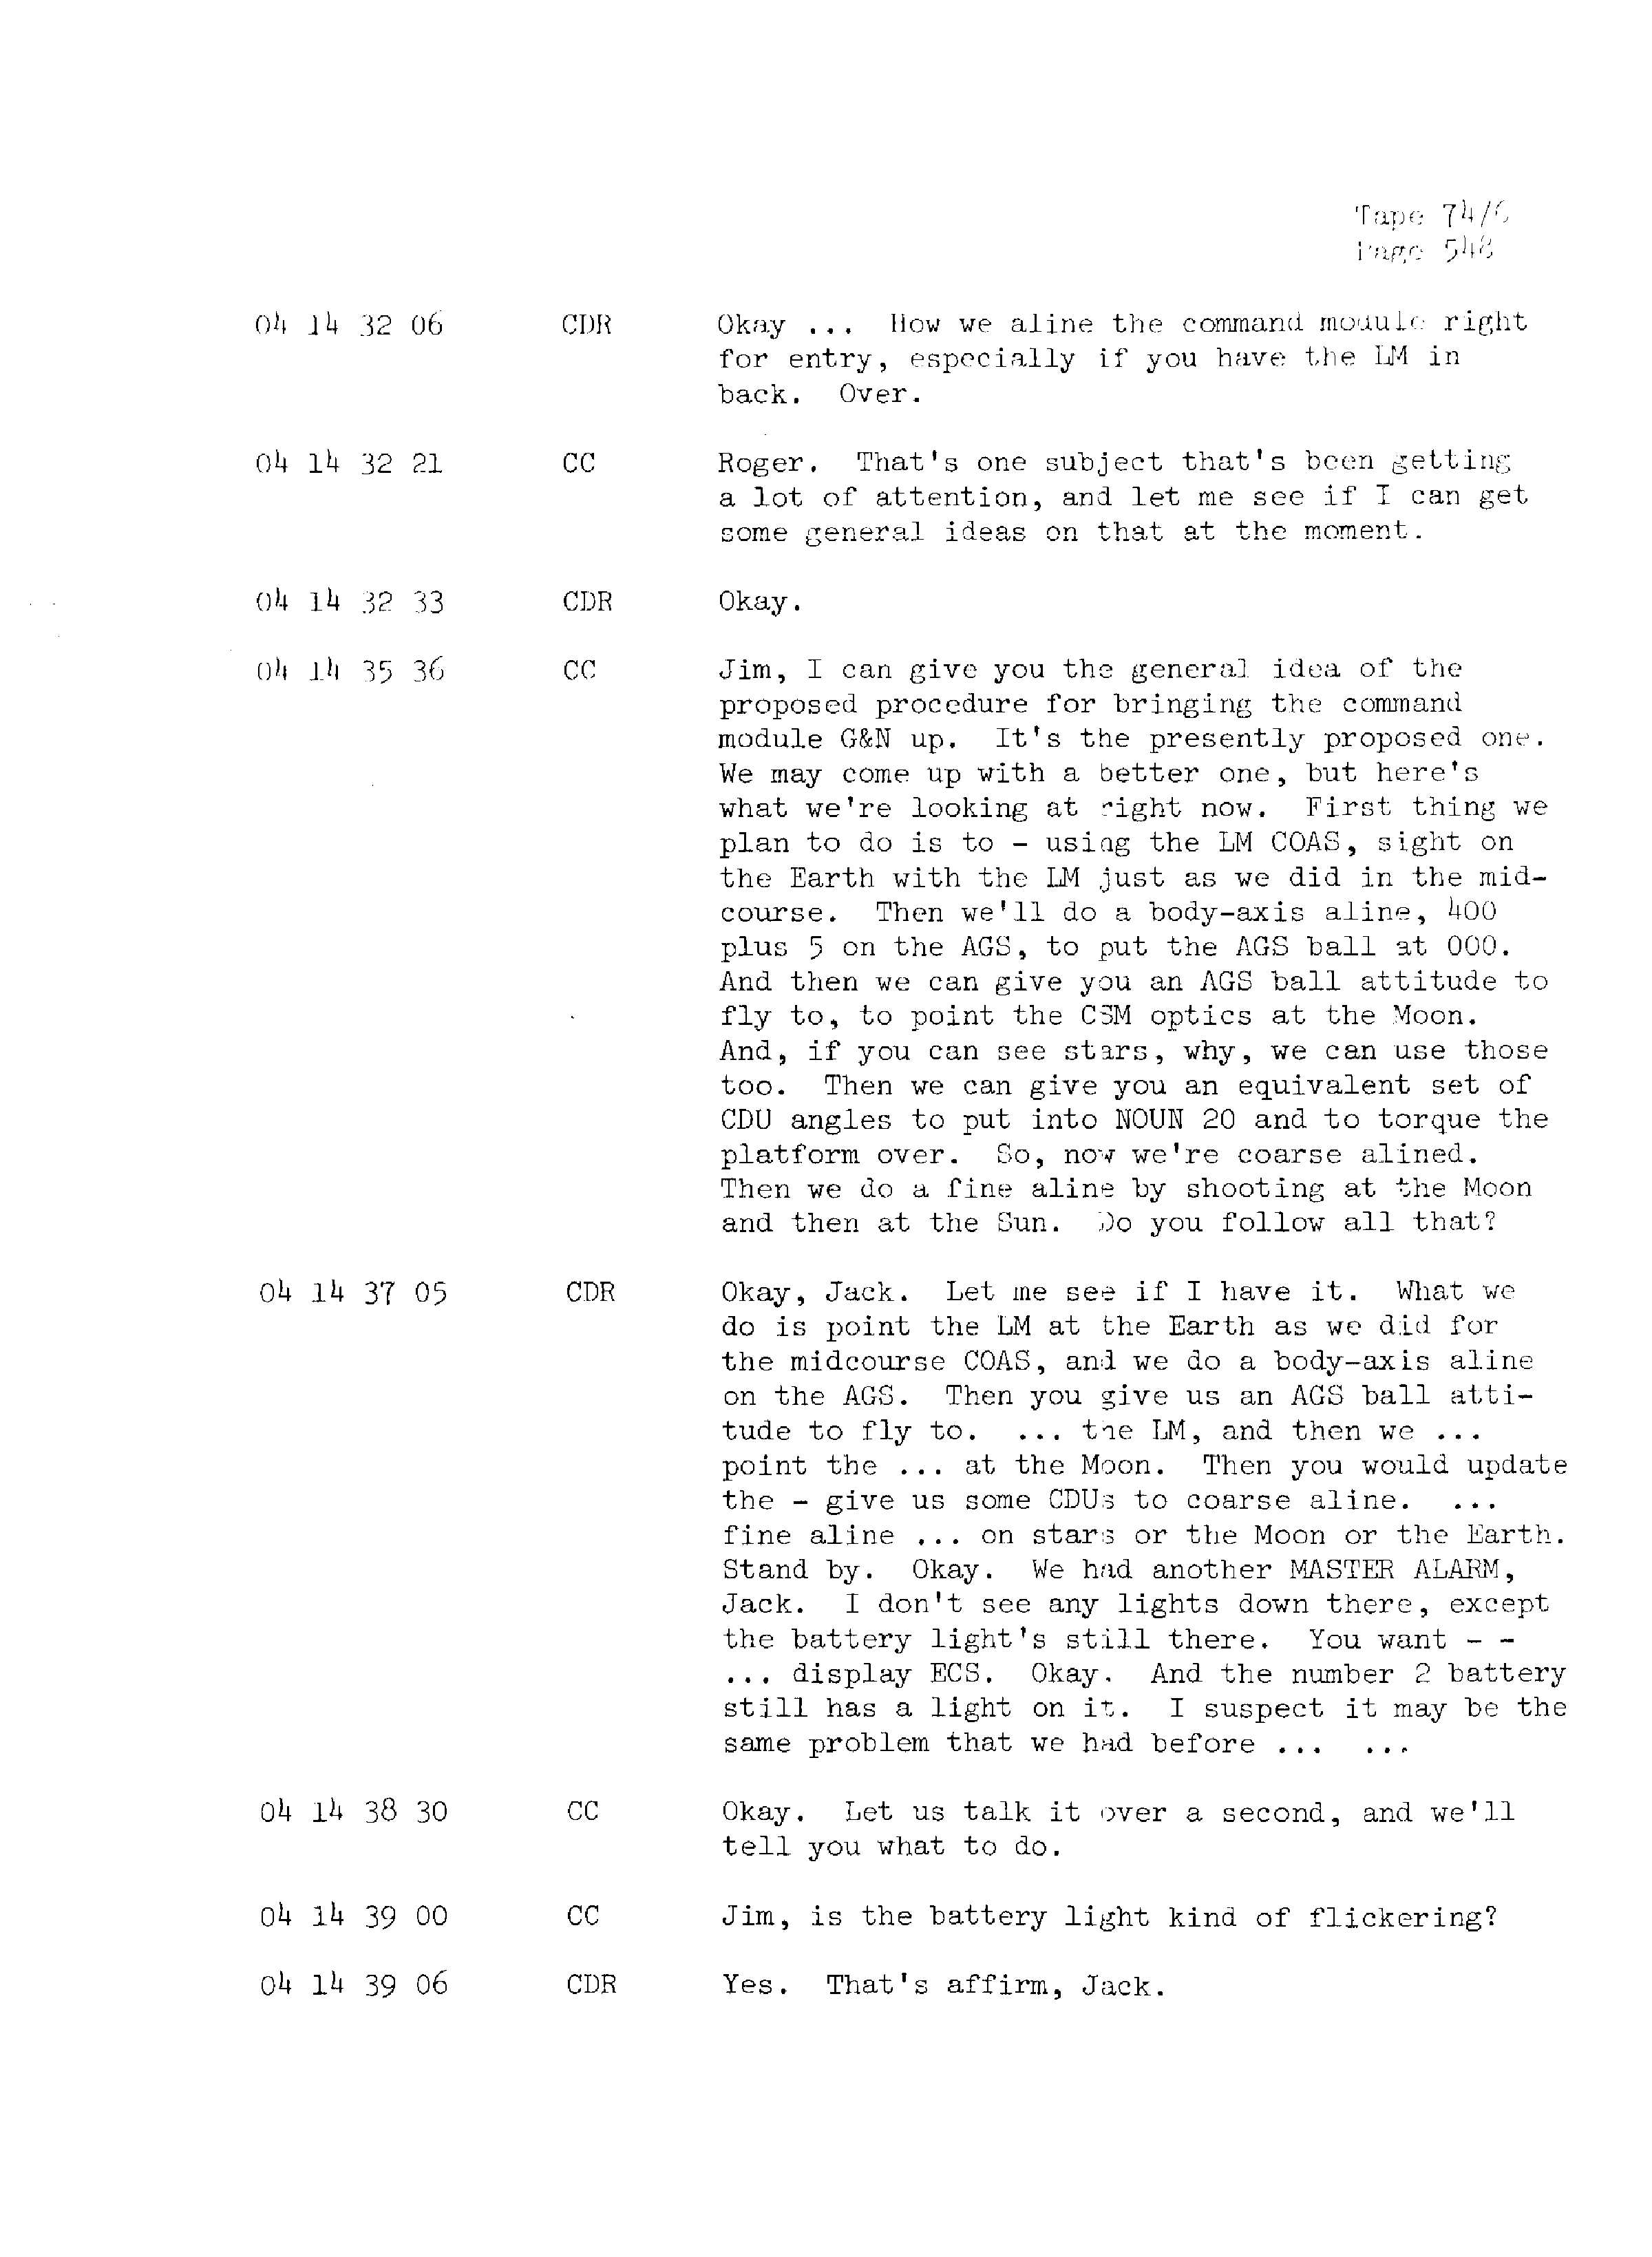 Page 555 of Apollo 13’s original transcript